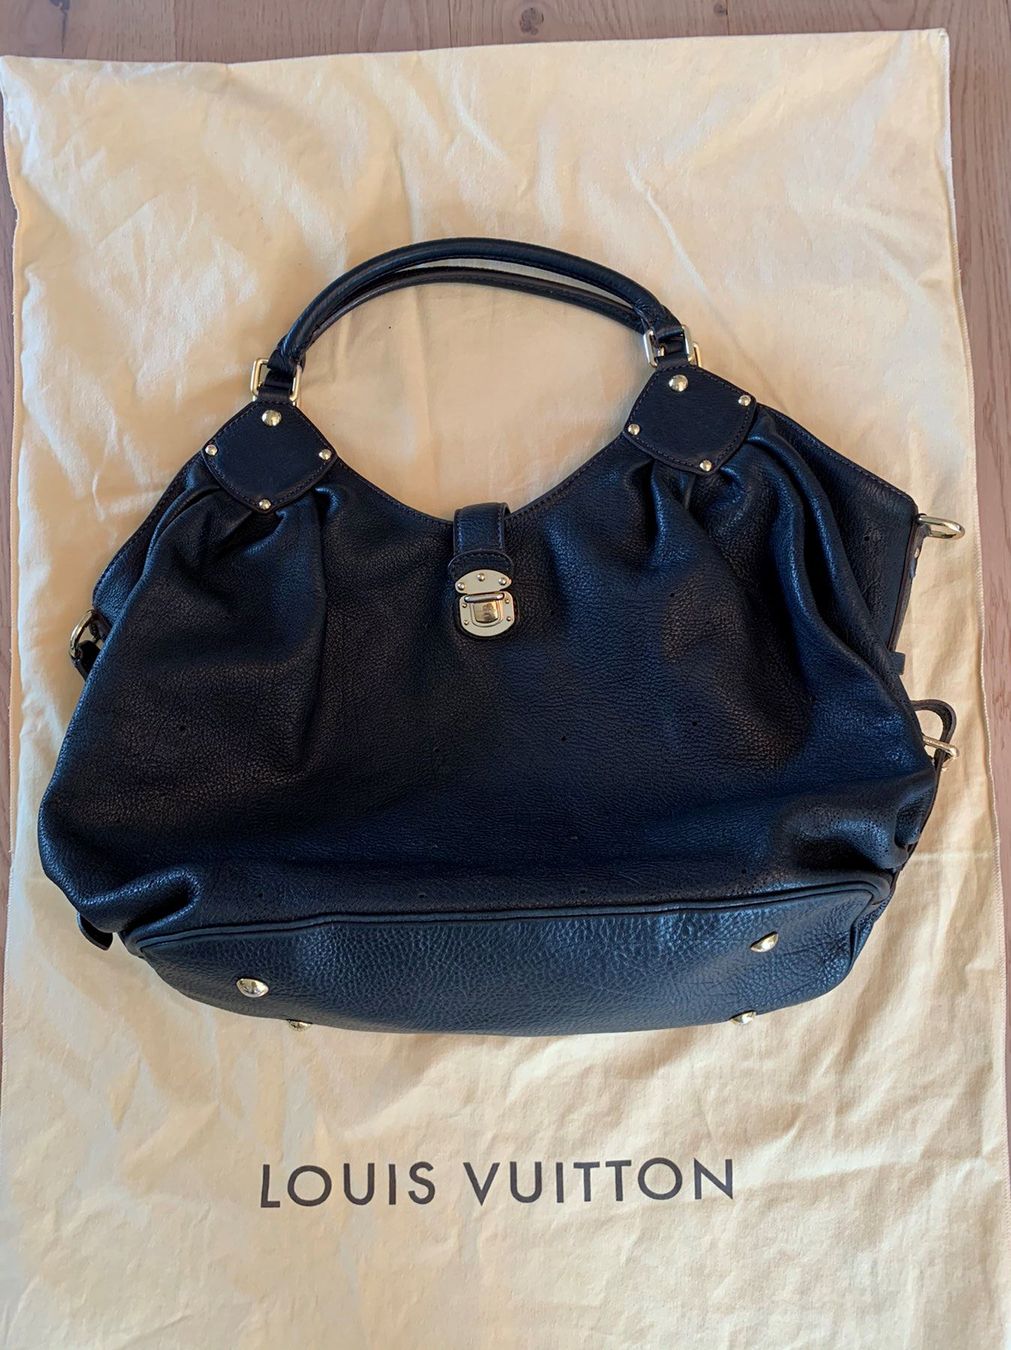 Louis Vuitton Tasche schwarz kaufen auf Ricardo